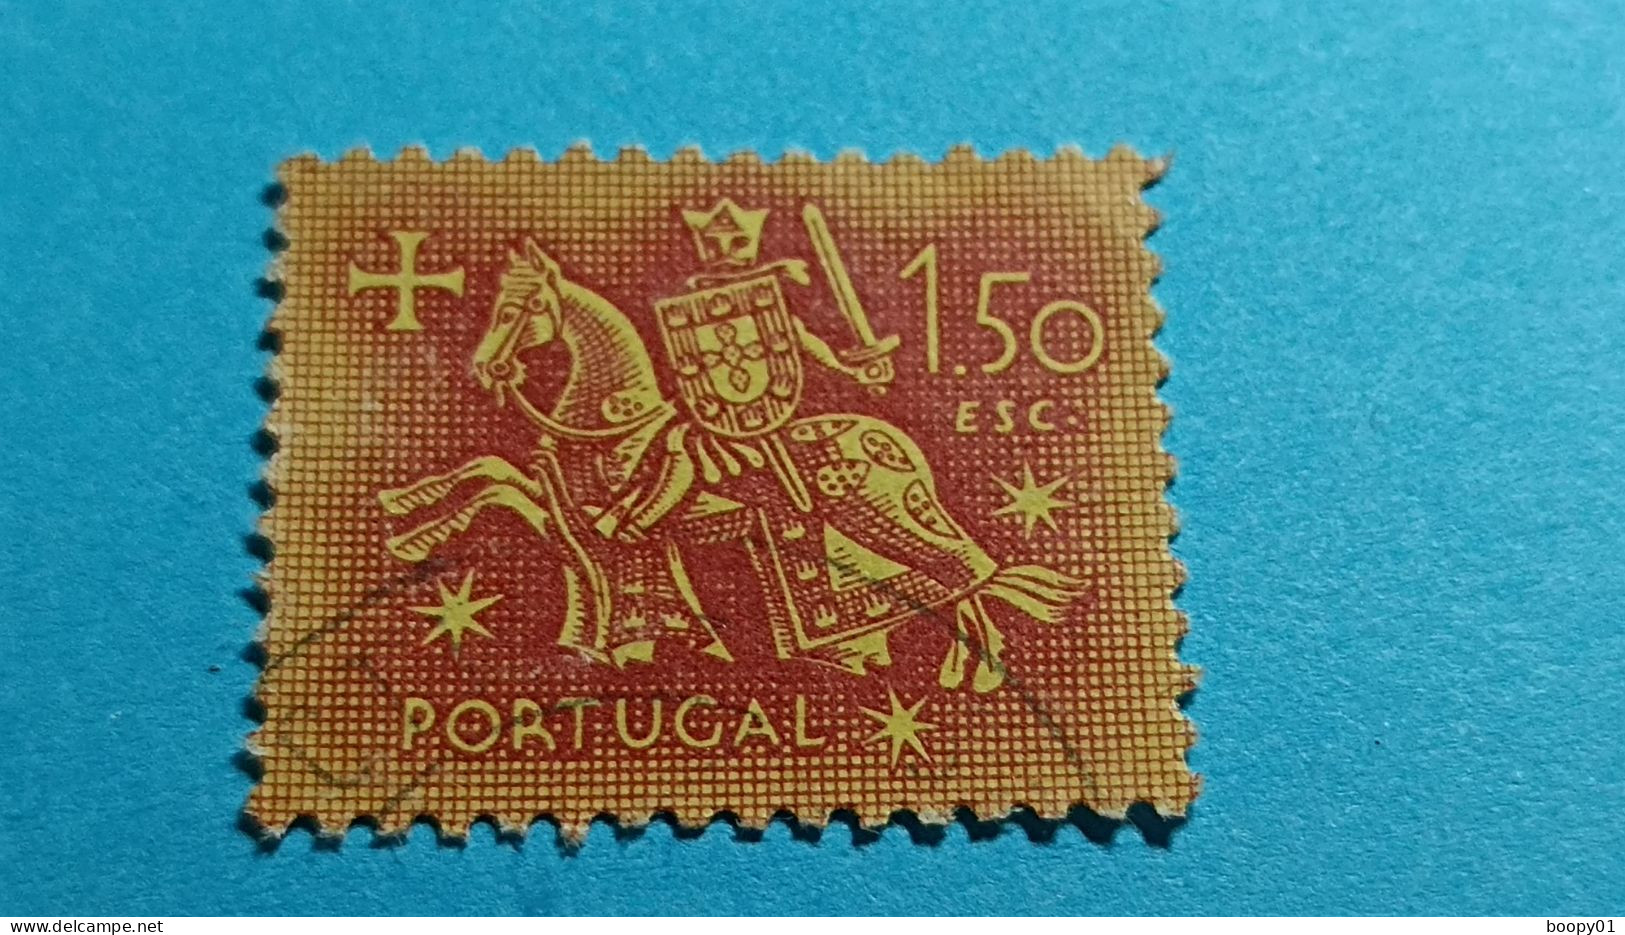 PORTUGAL - Timbre 1953 : Sceau équestre De Denis 1er De Portugal (Dinis Ou Diniz) - 1.50 Escudo - Usado